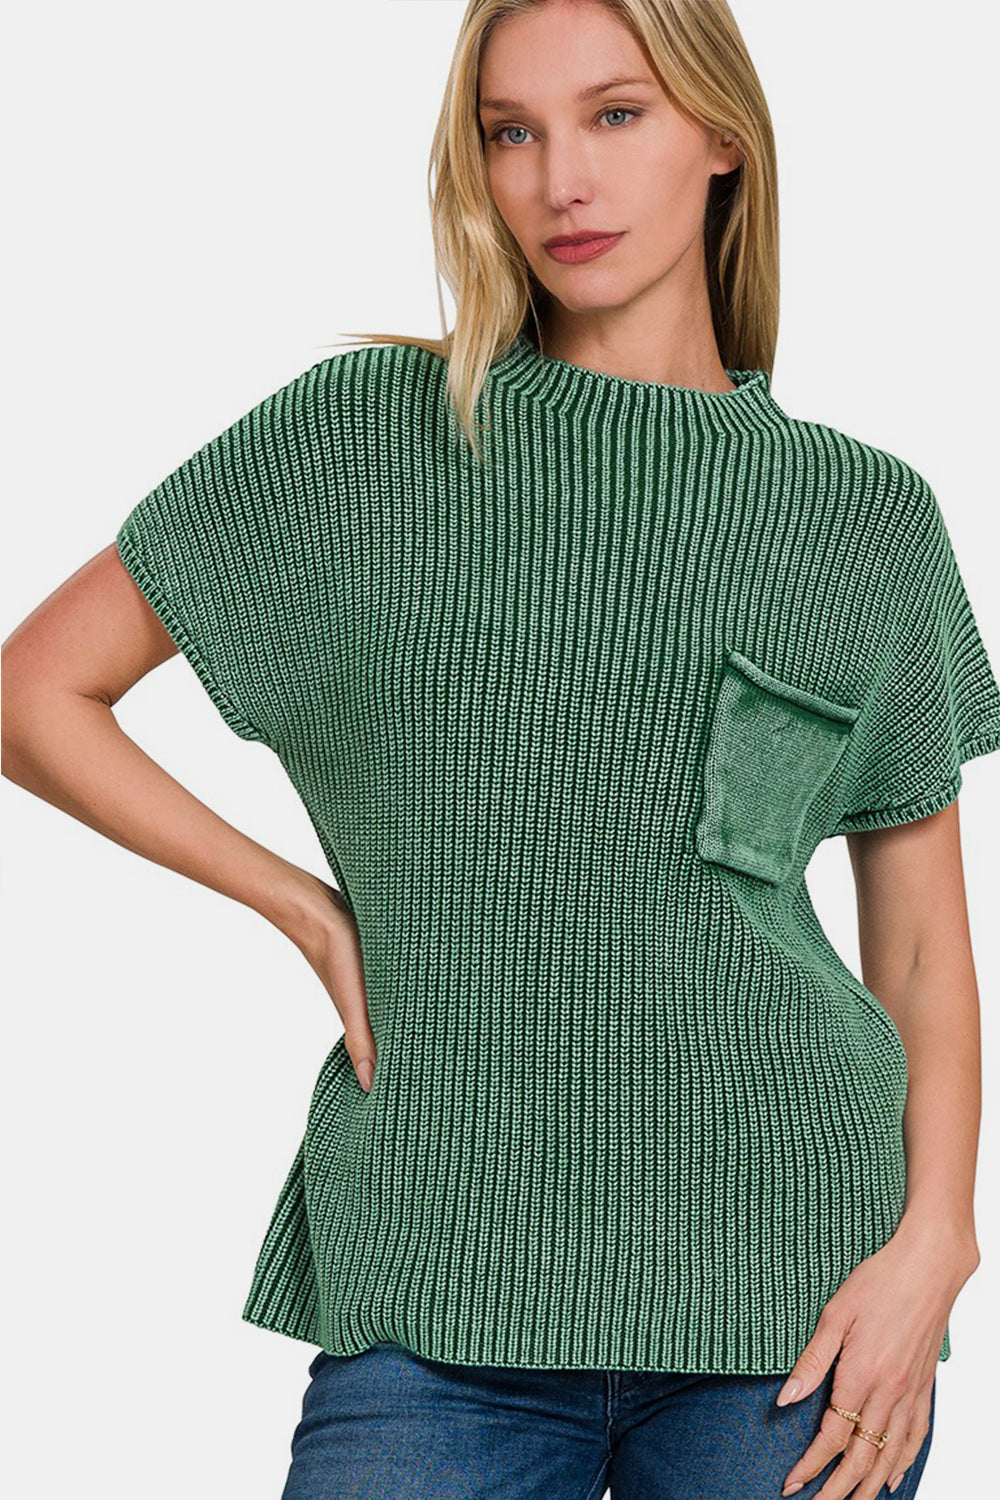 Zenana Short Sleeve Sweater - Mock Neck Sweater - Z Clothing Co.